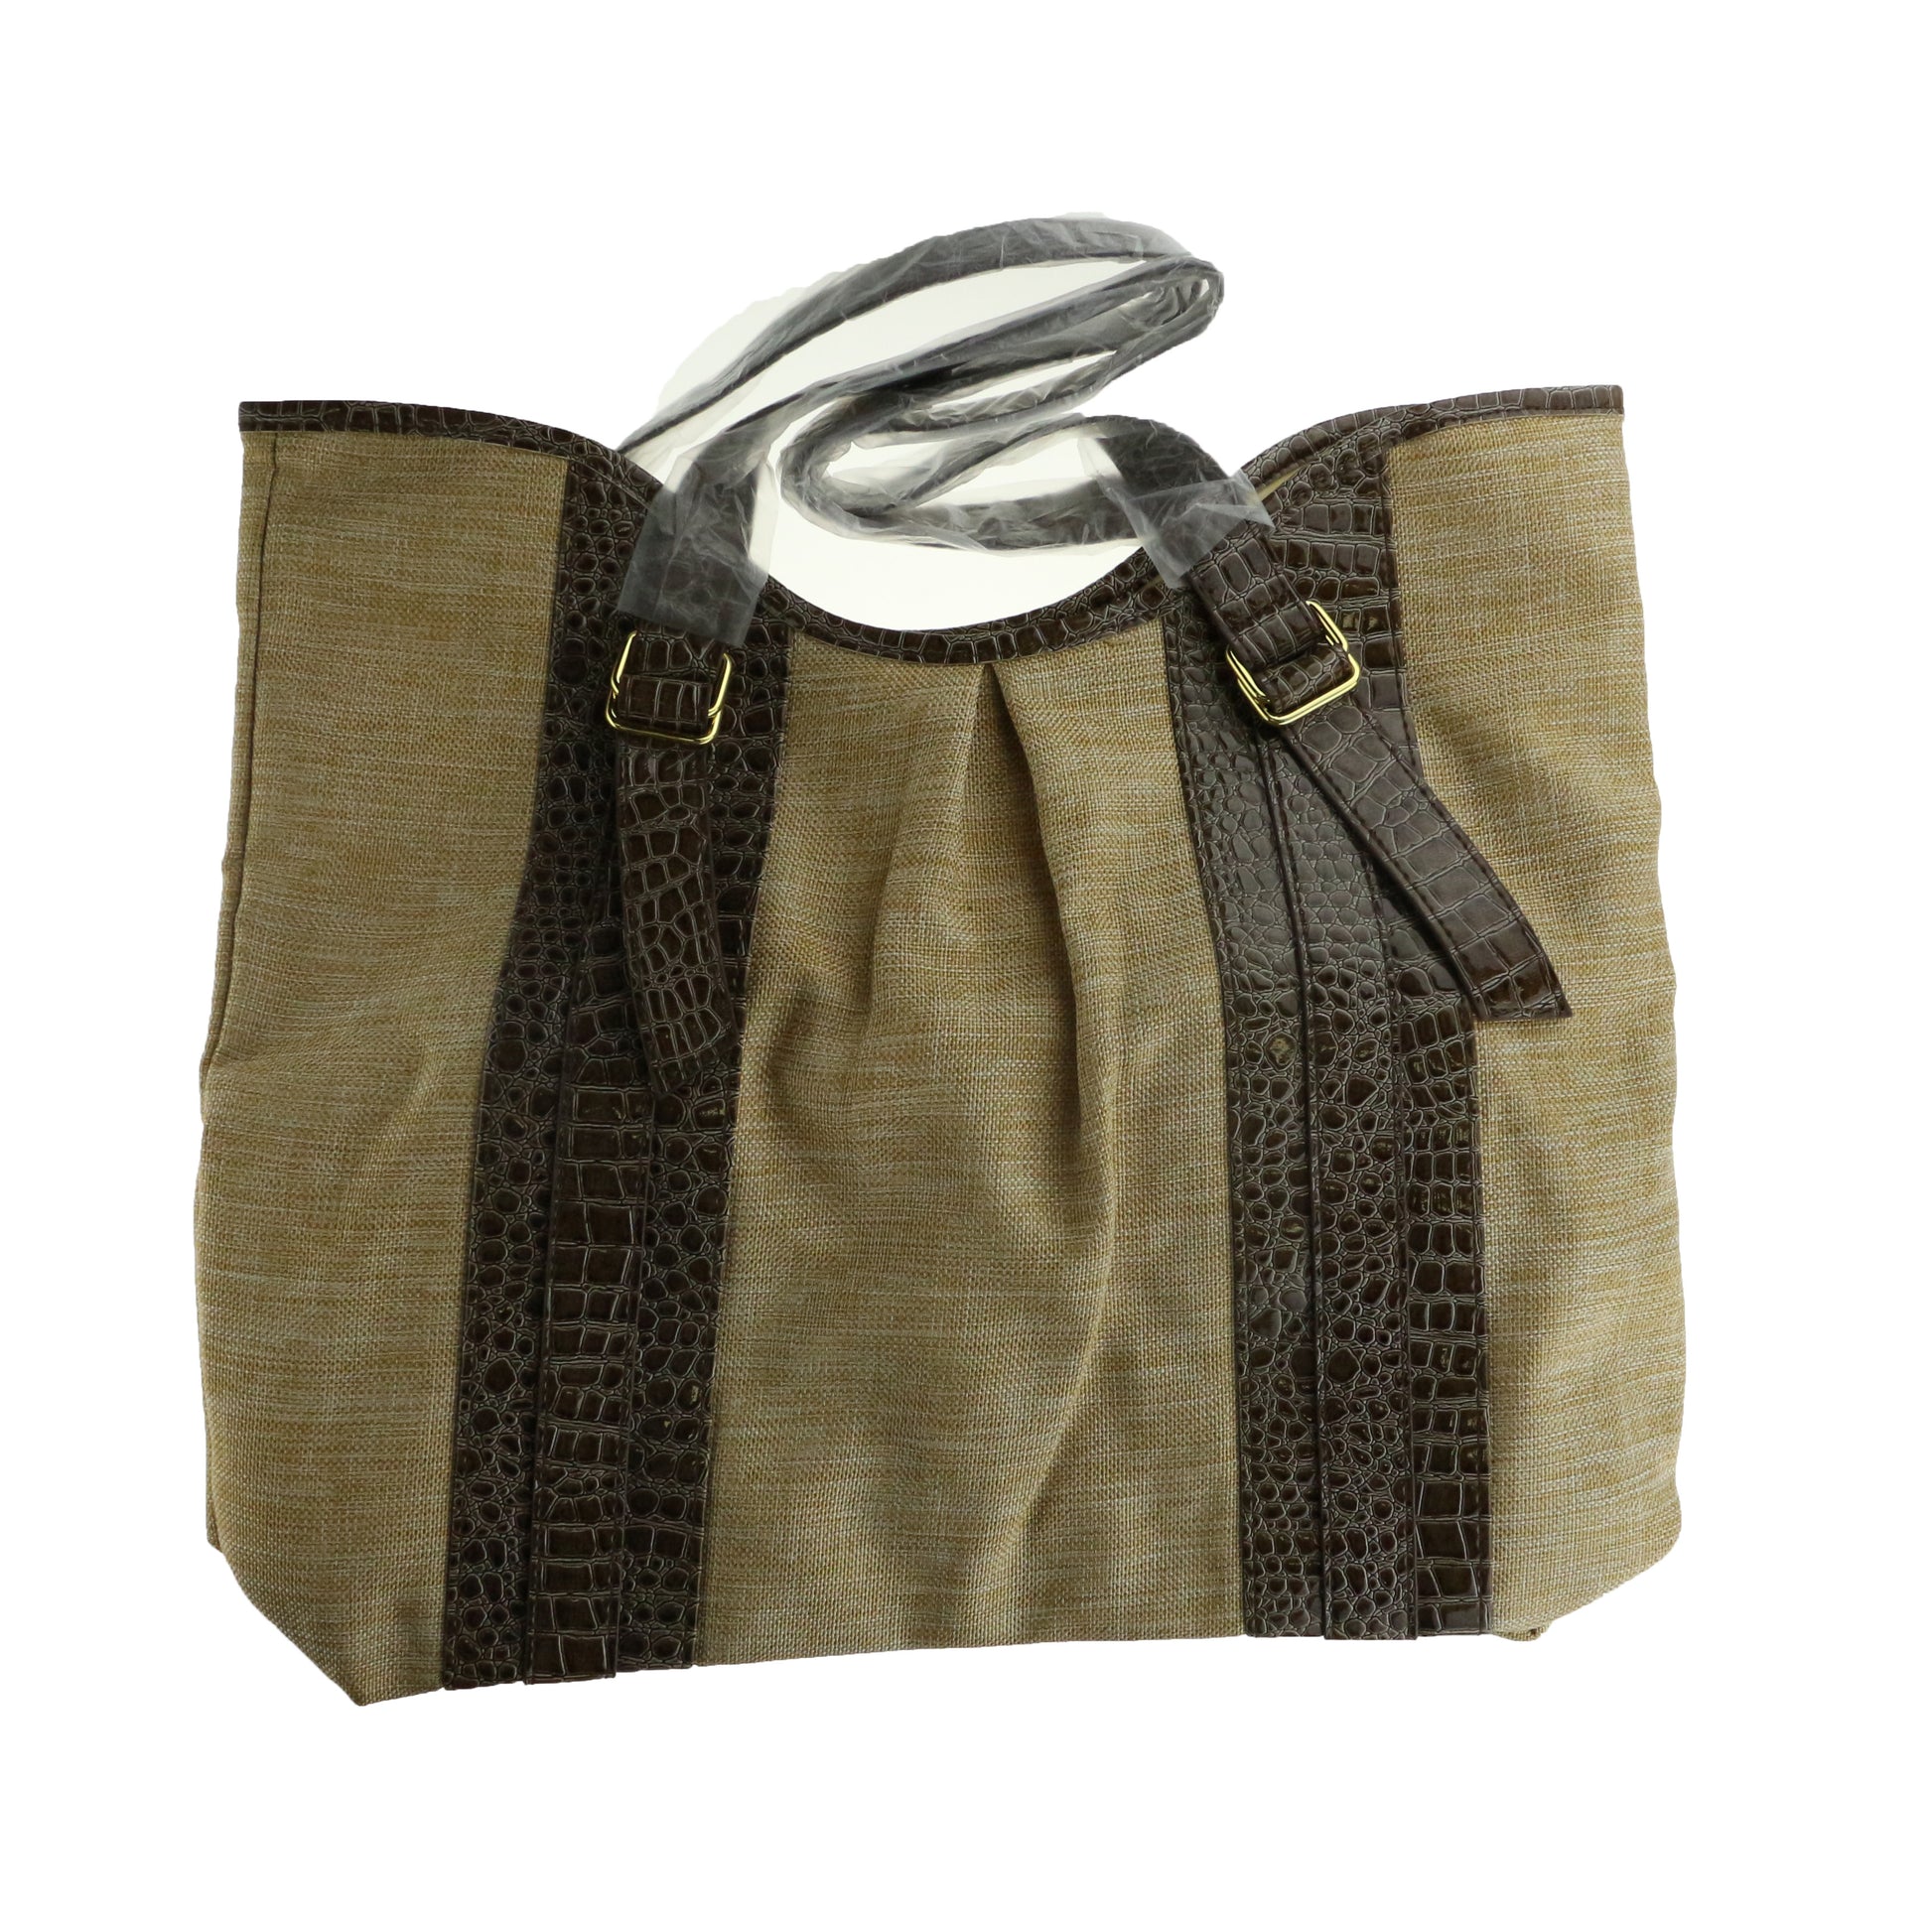 Estee Lauder Brown Elegant Fashion Tote Bag New Tote Bag